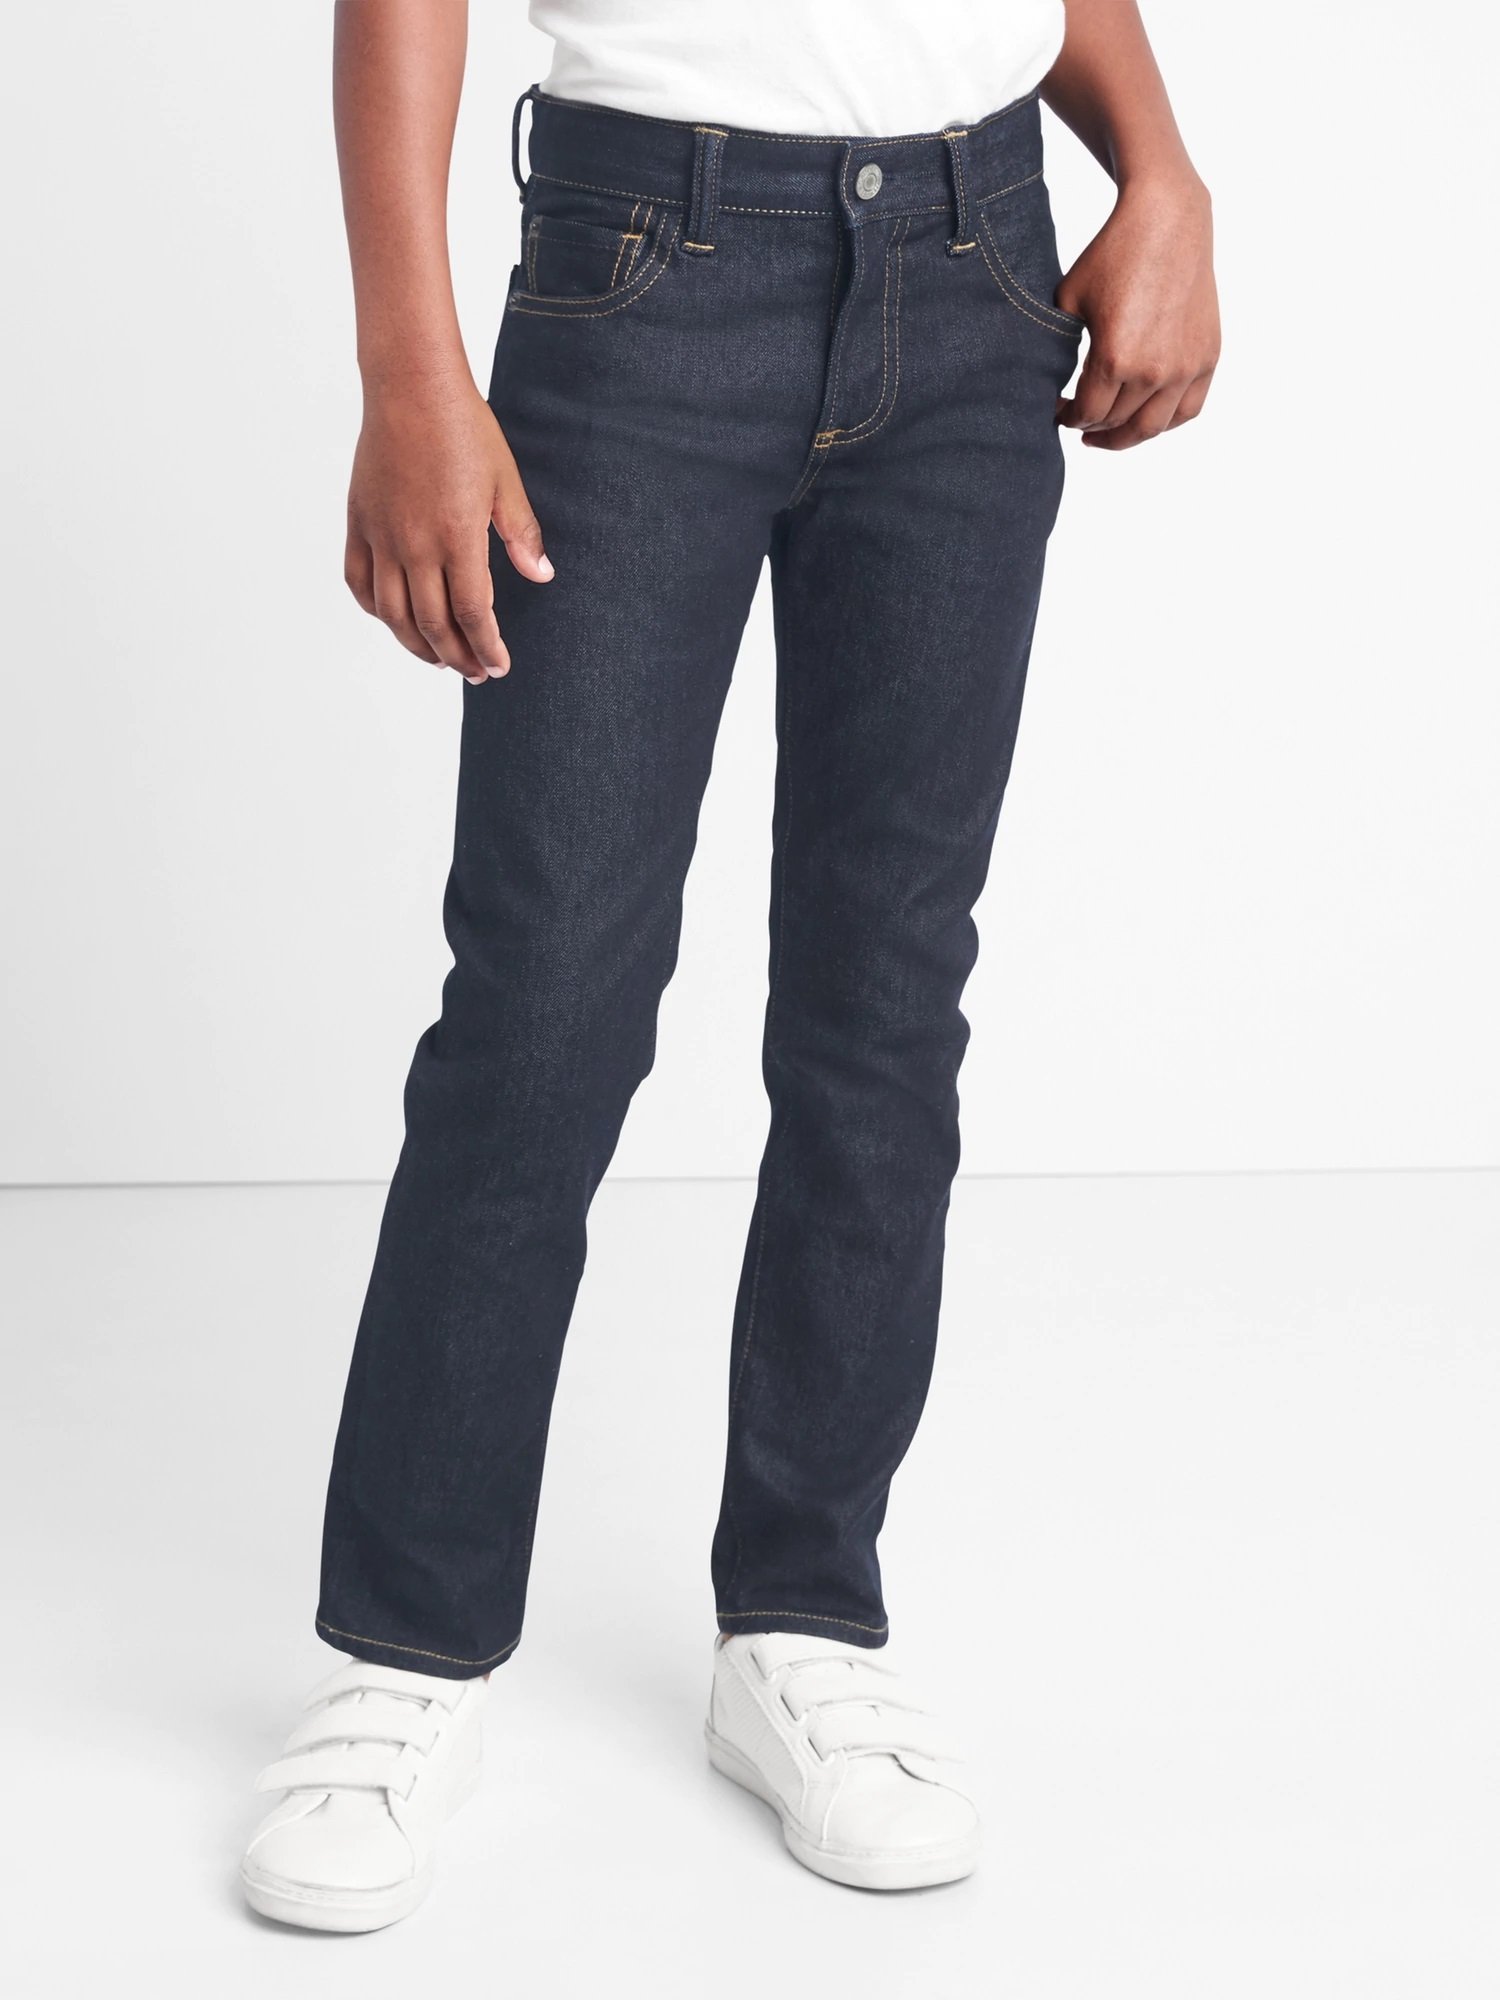 Streçli THERMOLITE® slim jean pantolon product image